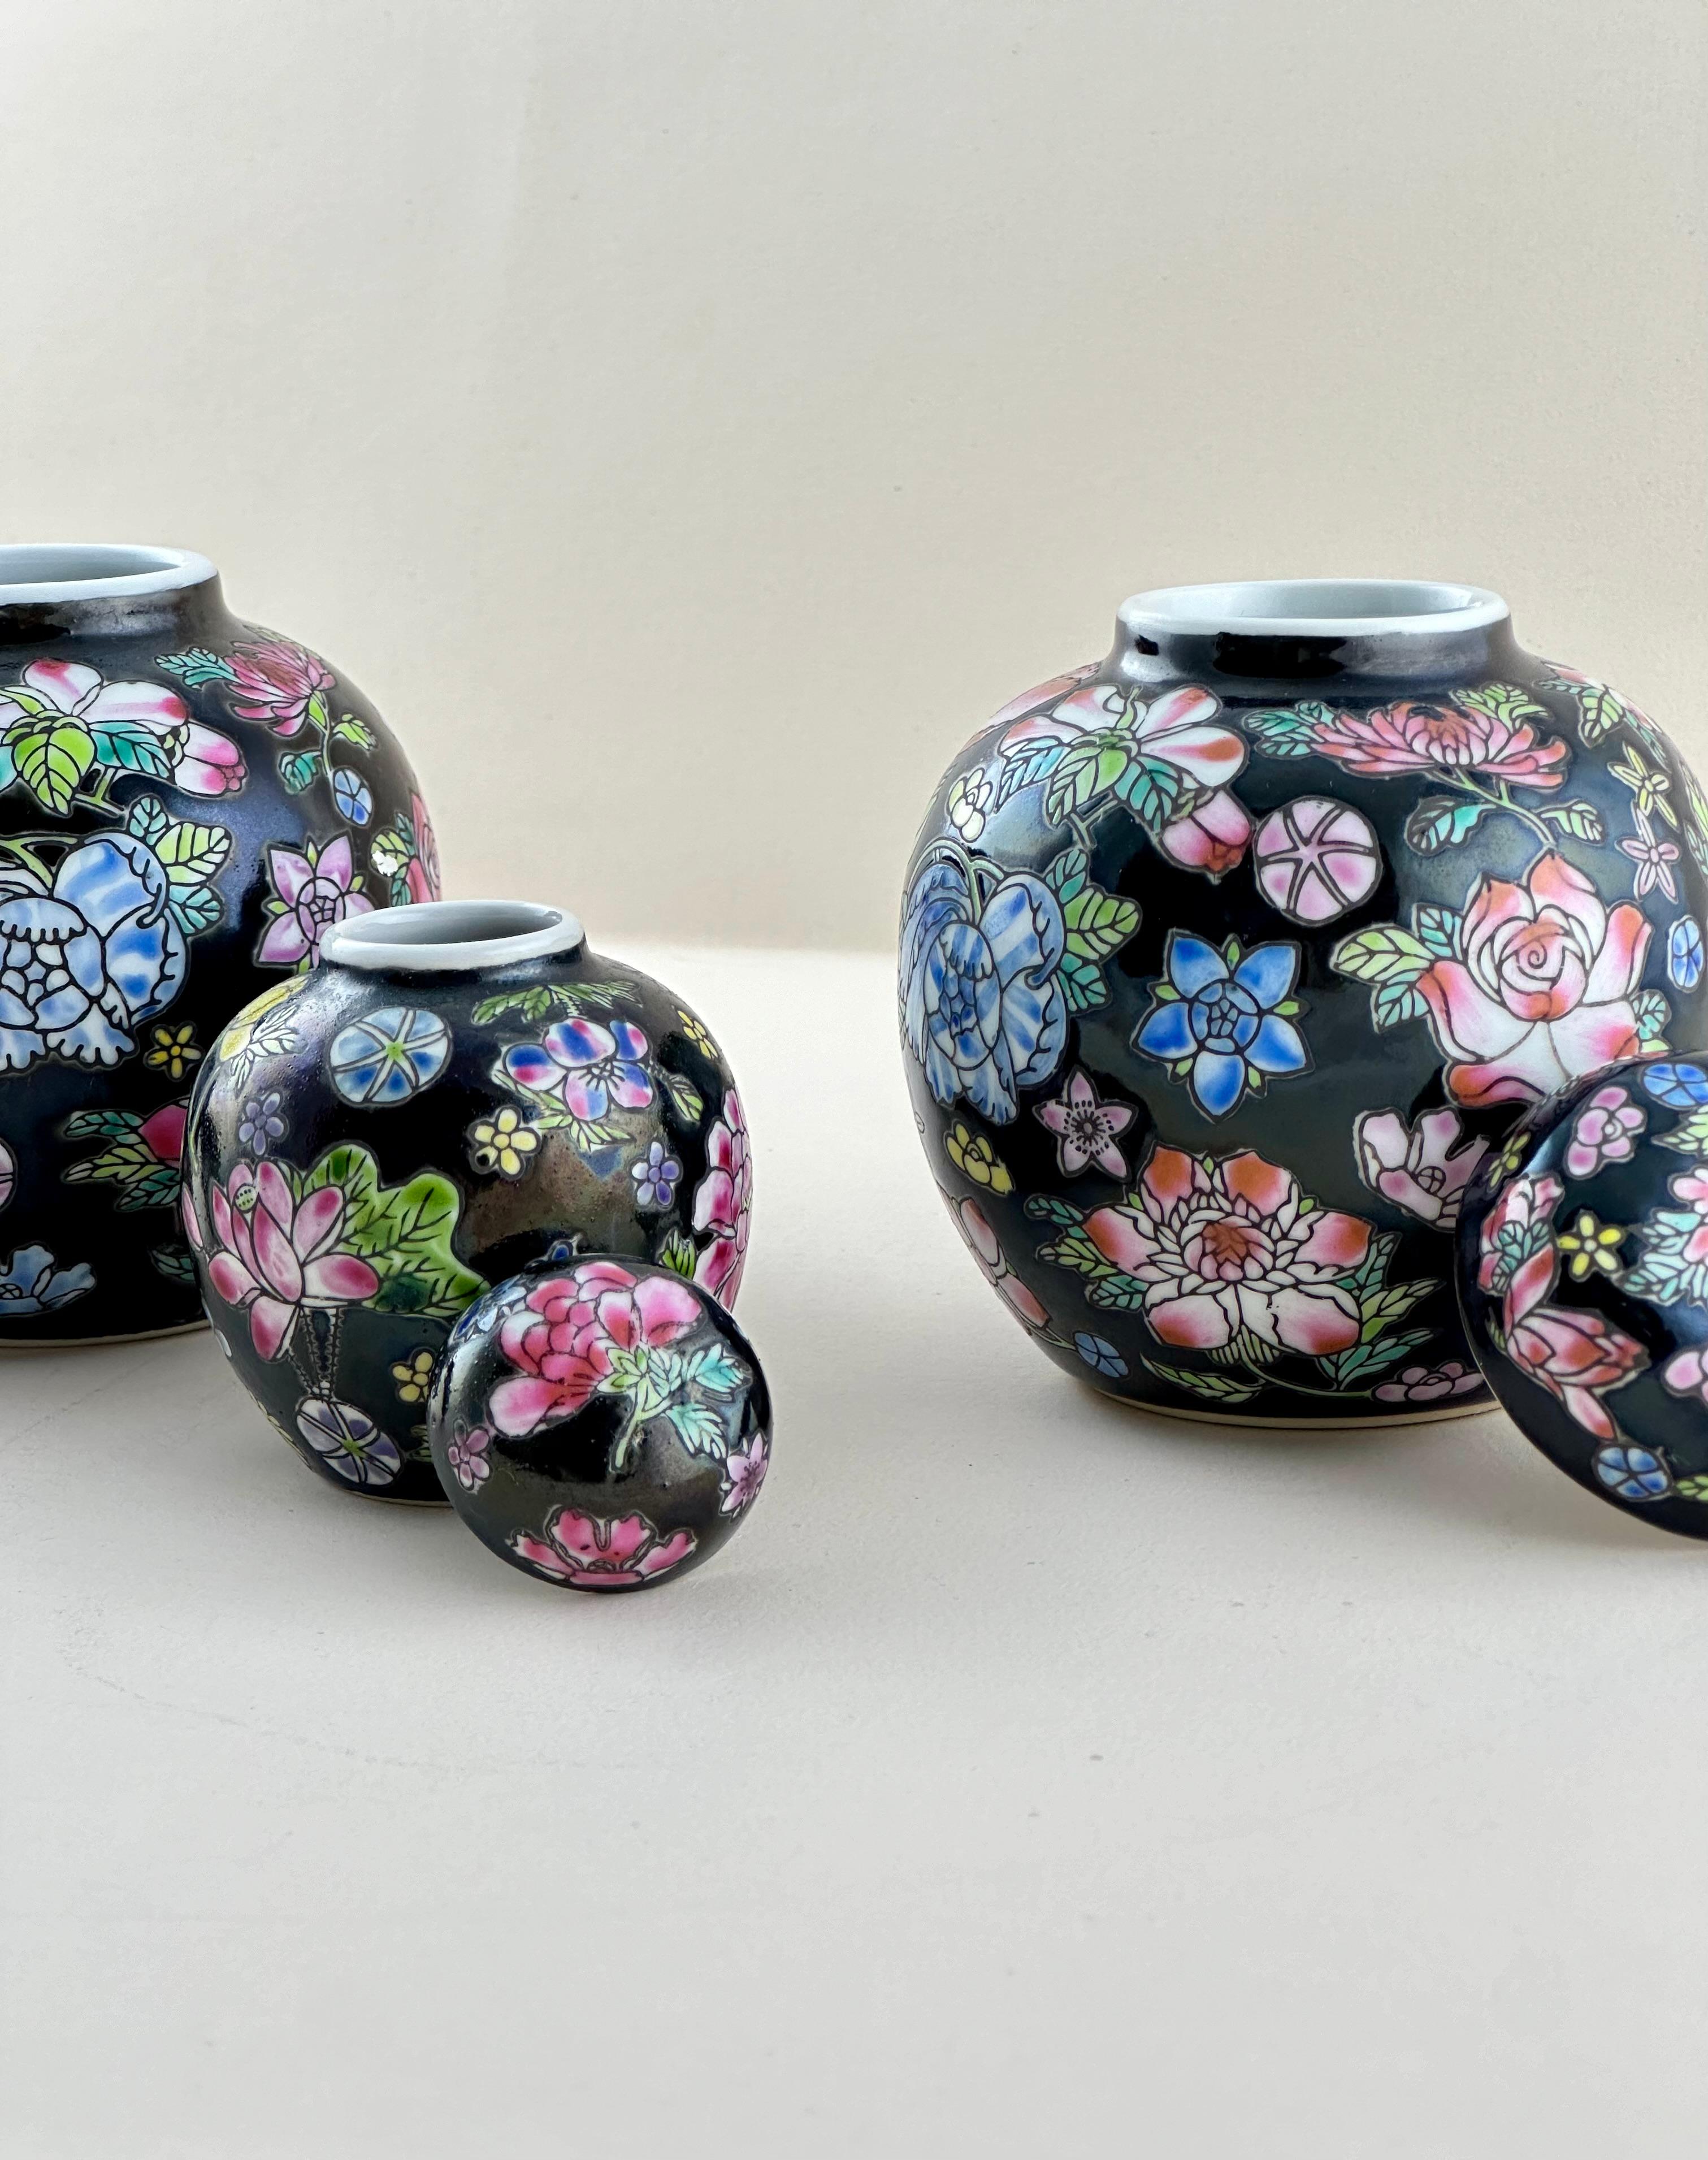 Un ensemble de trois petits pots de gingembre vintage fabriqués dans la région de Jingdezhen en Chine dans les années 1970.

Ce trio miniature est décoré dans le style 